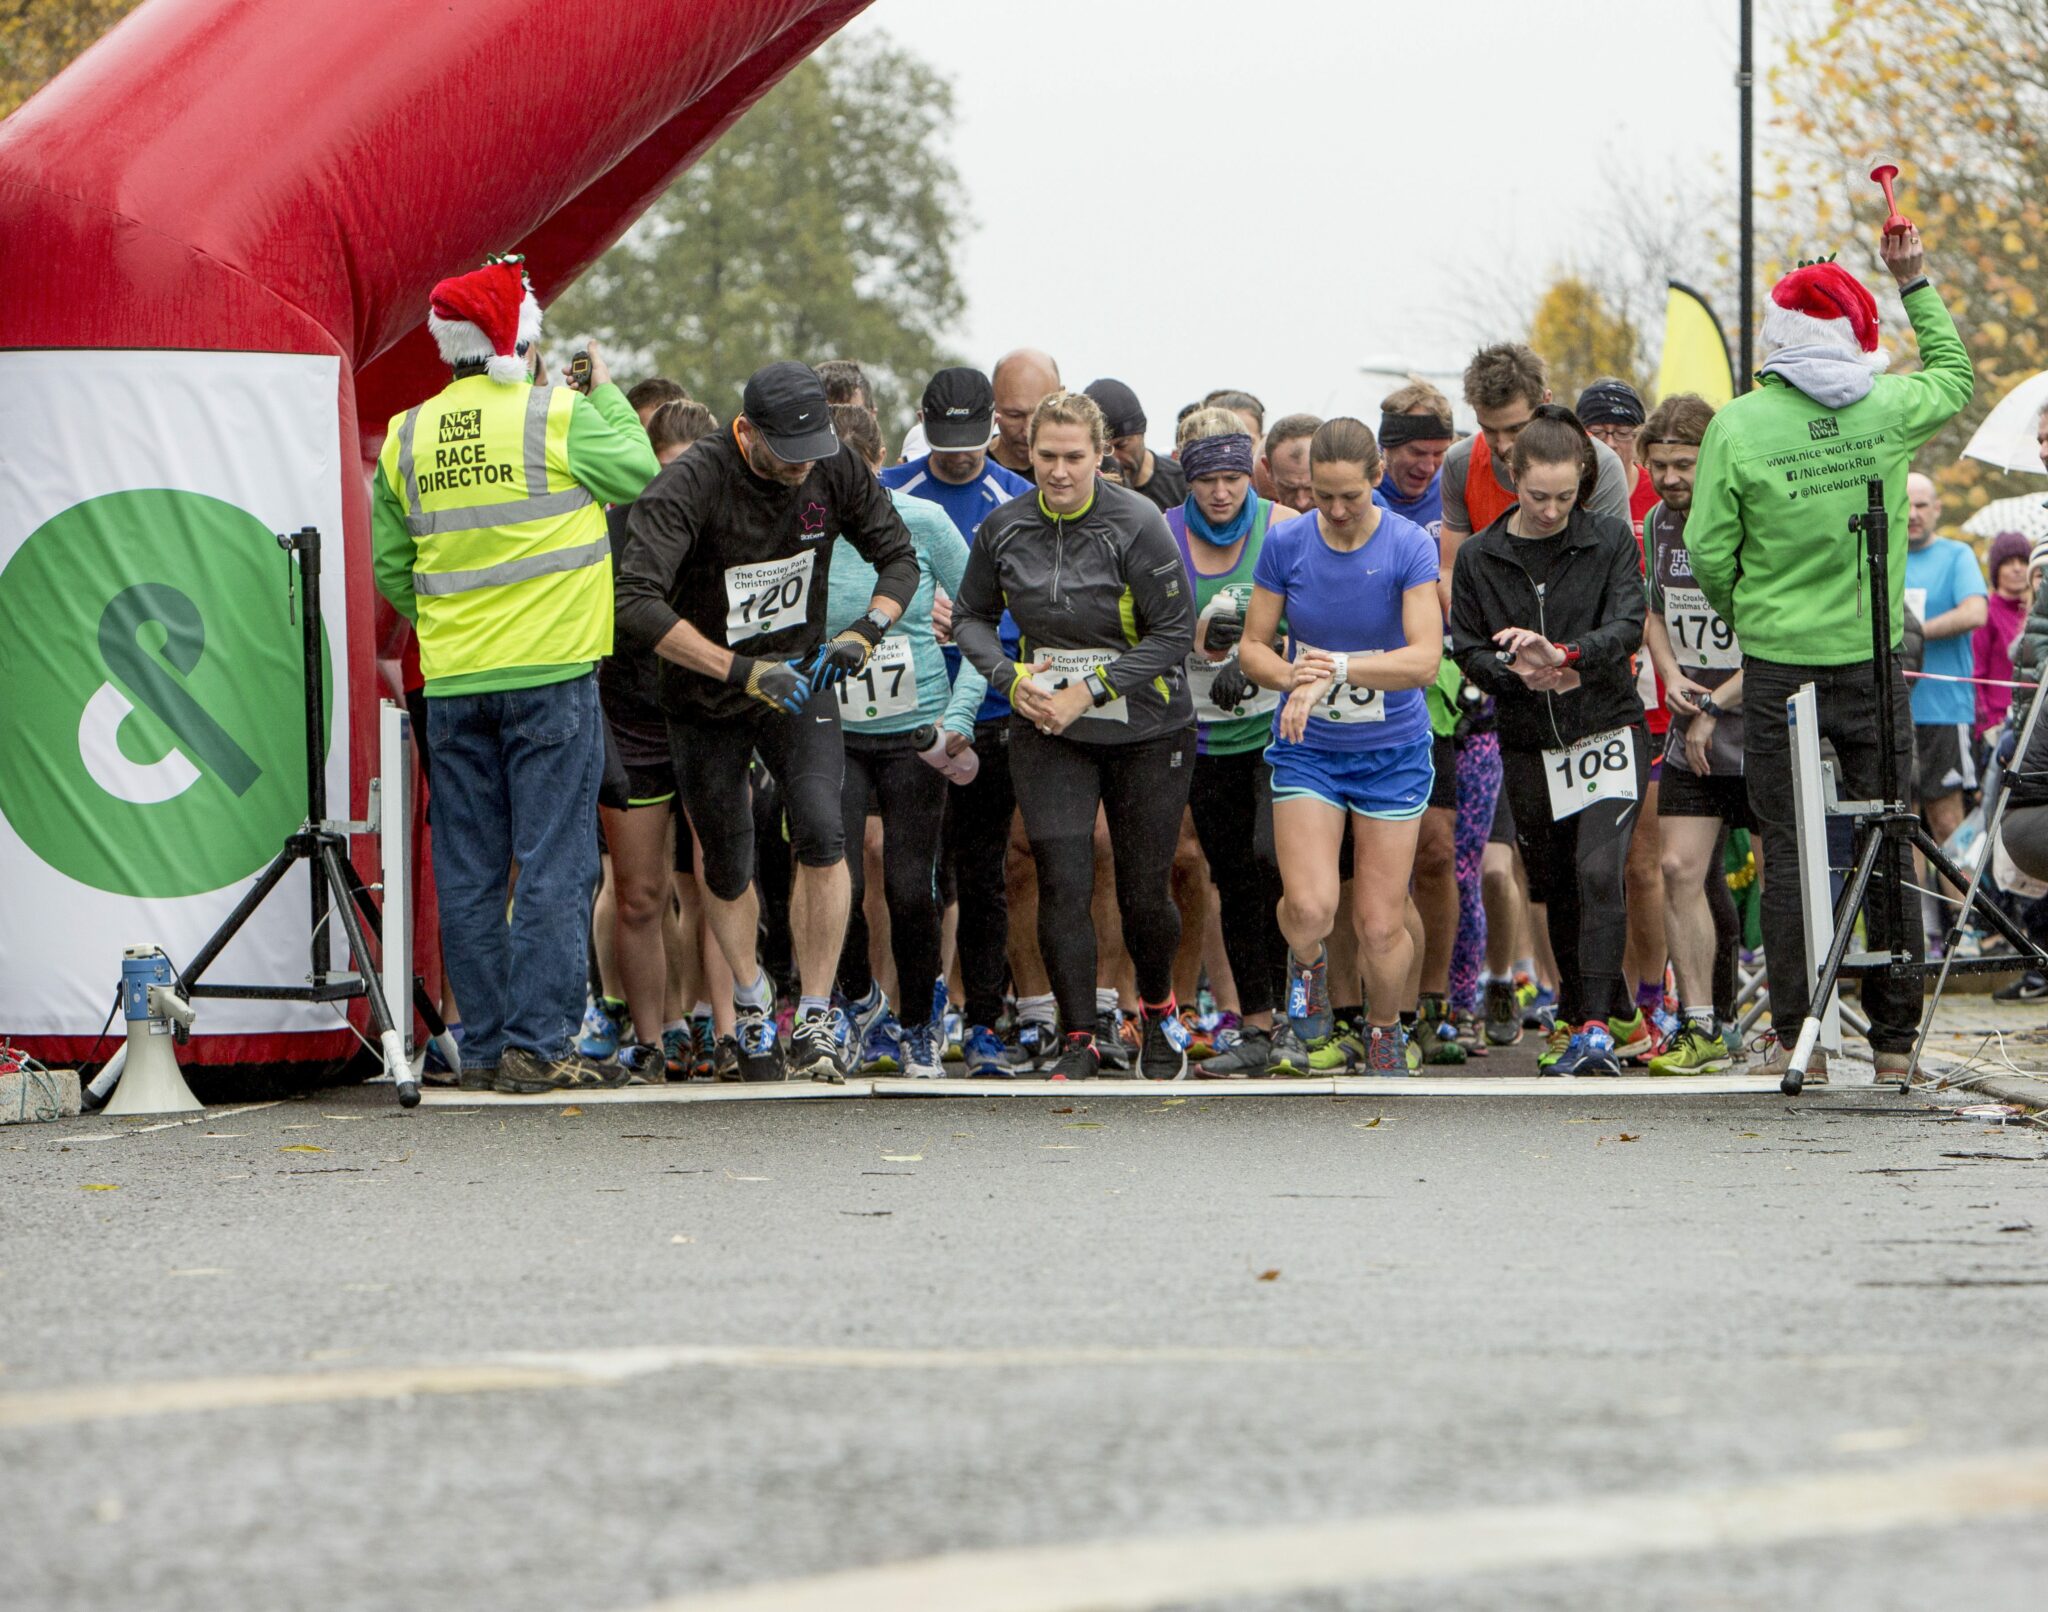 Croxley Park 10K Run | Runners at Start Line